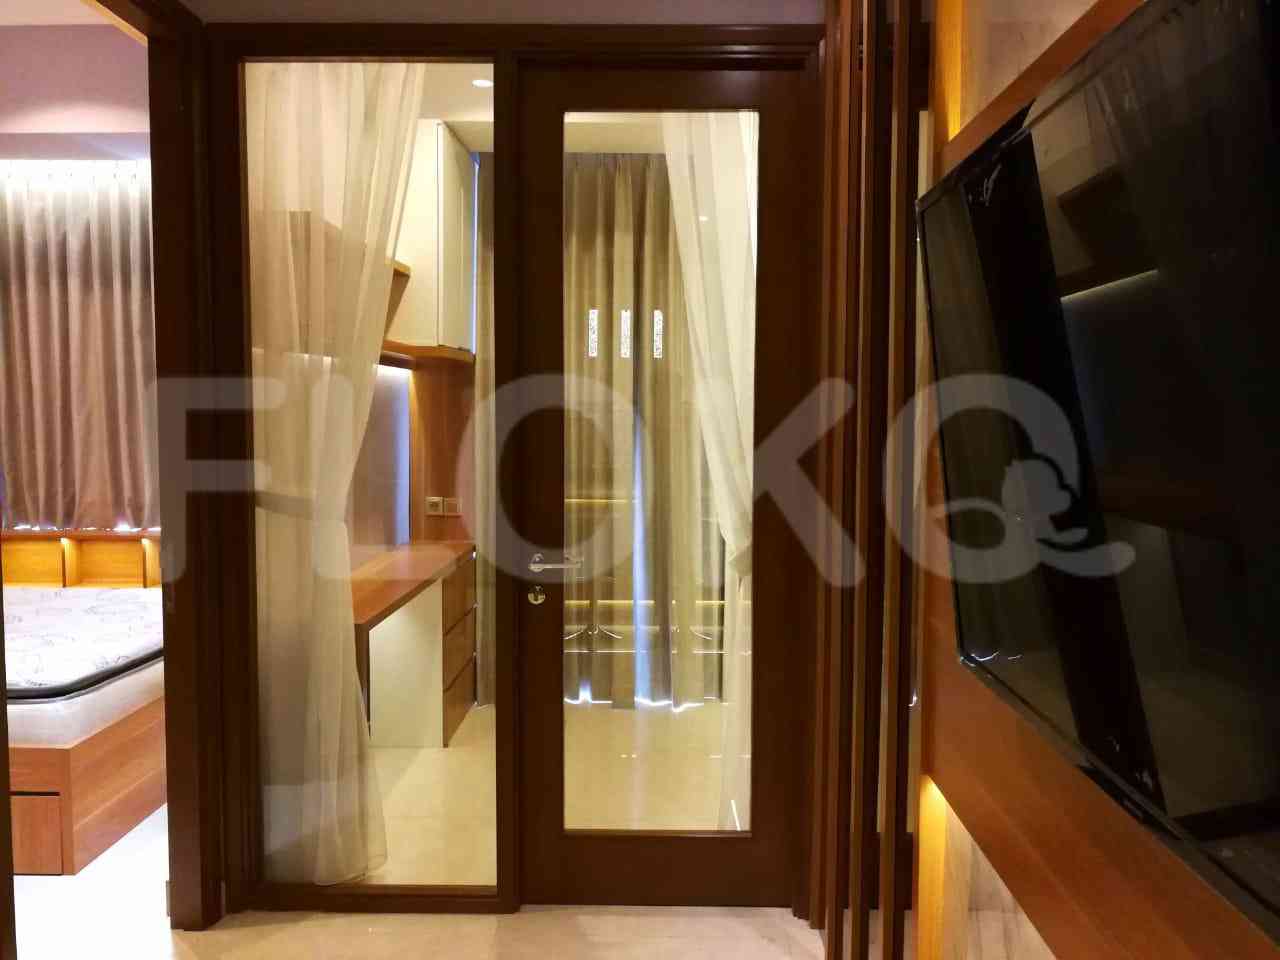 2 Bedroom on 15th Floor for Rent in Taman Anggrek Residence - ftaae7 4